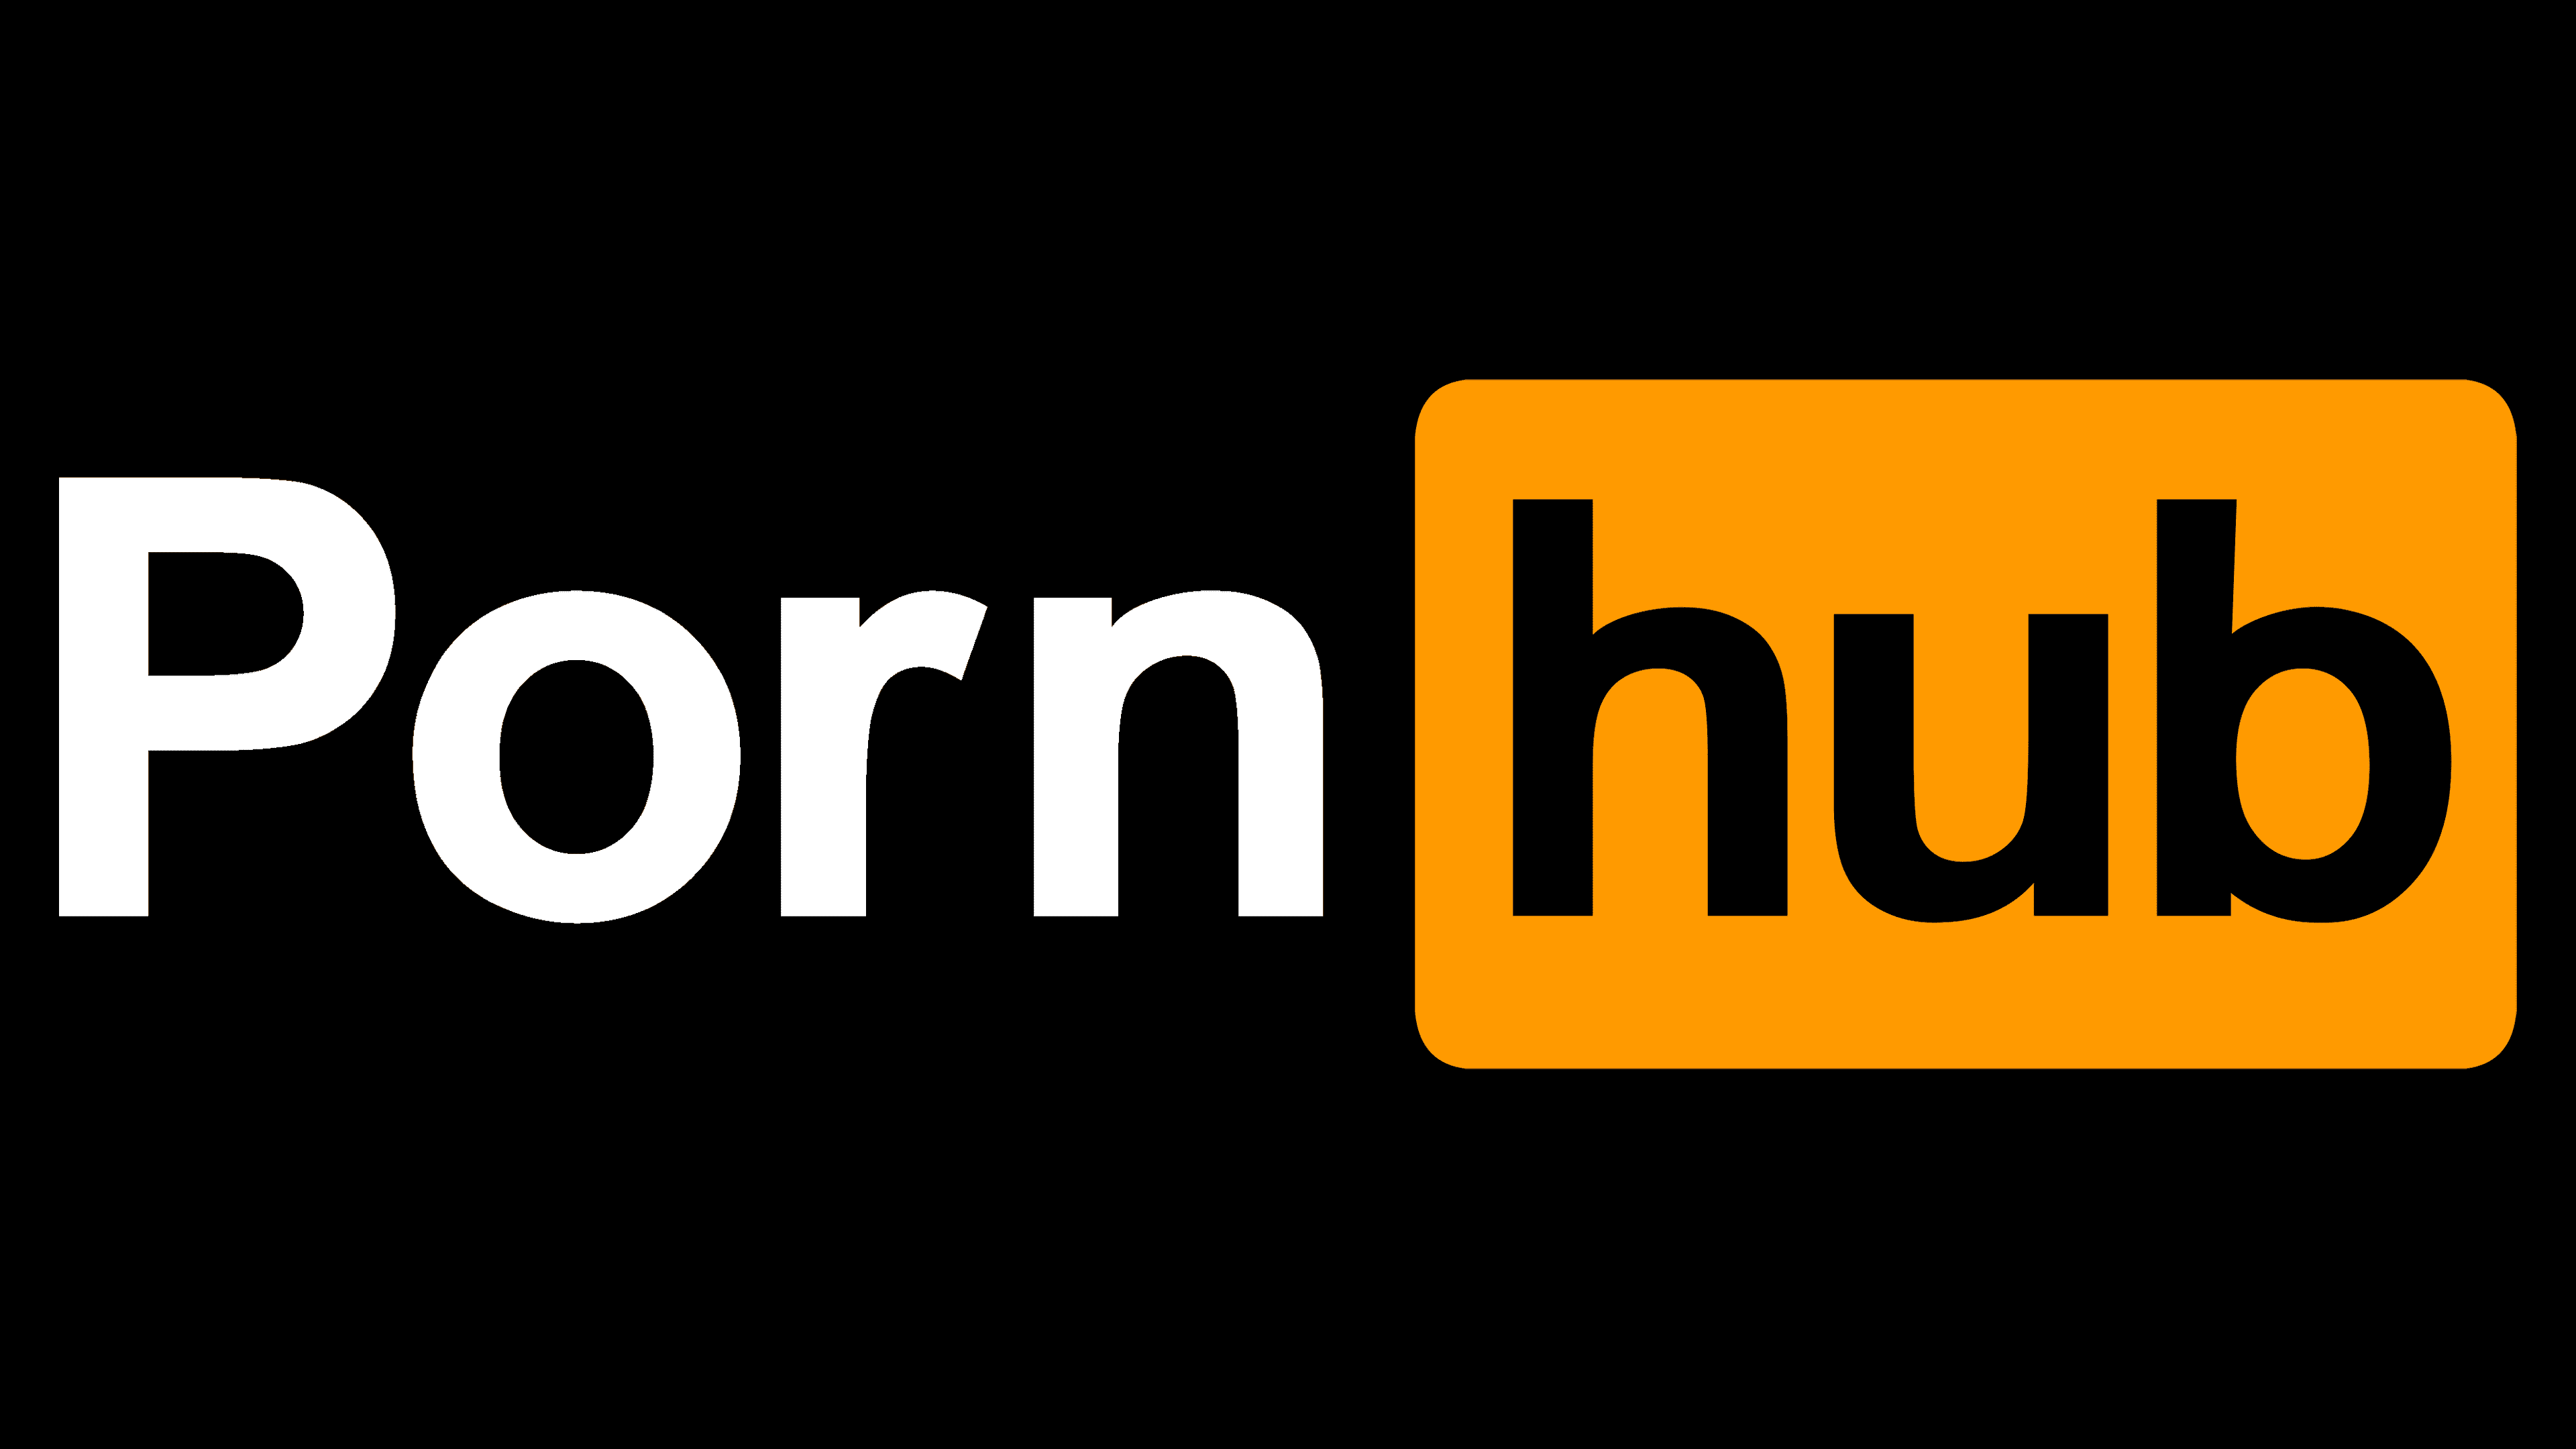 Pornnn hub